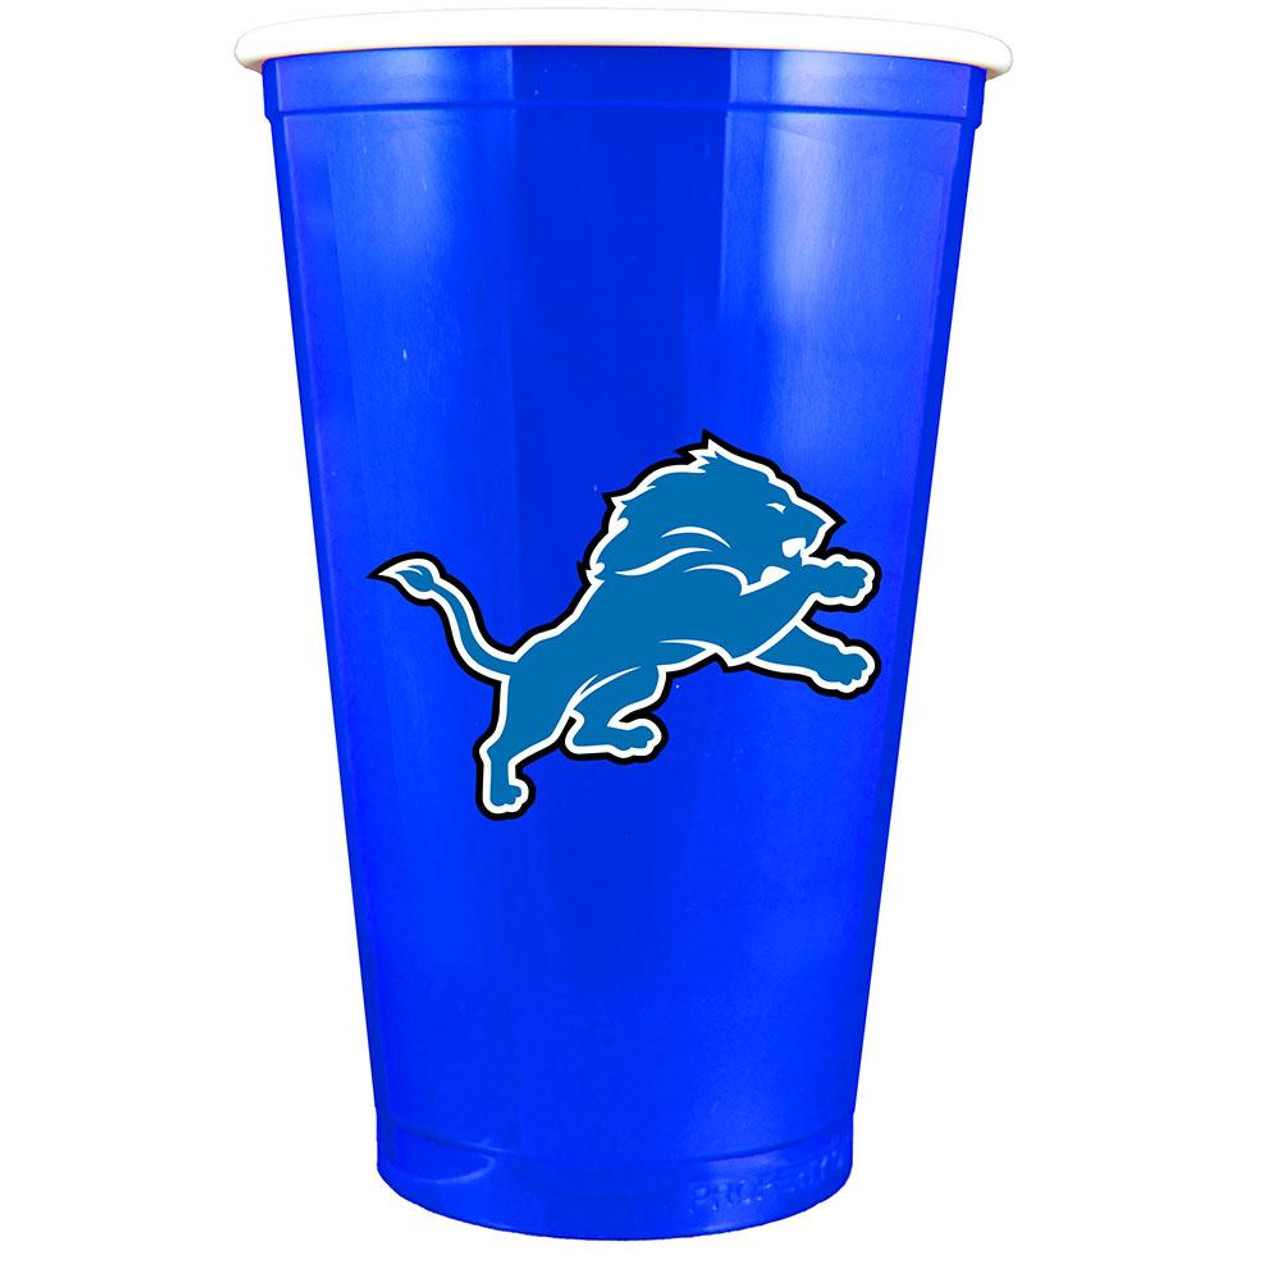 Souvenir of the week: Detroit Lions party cups